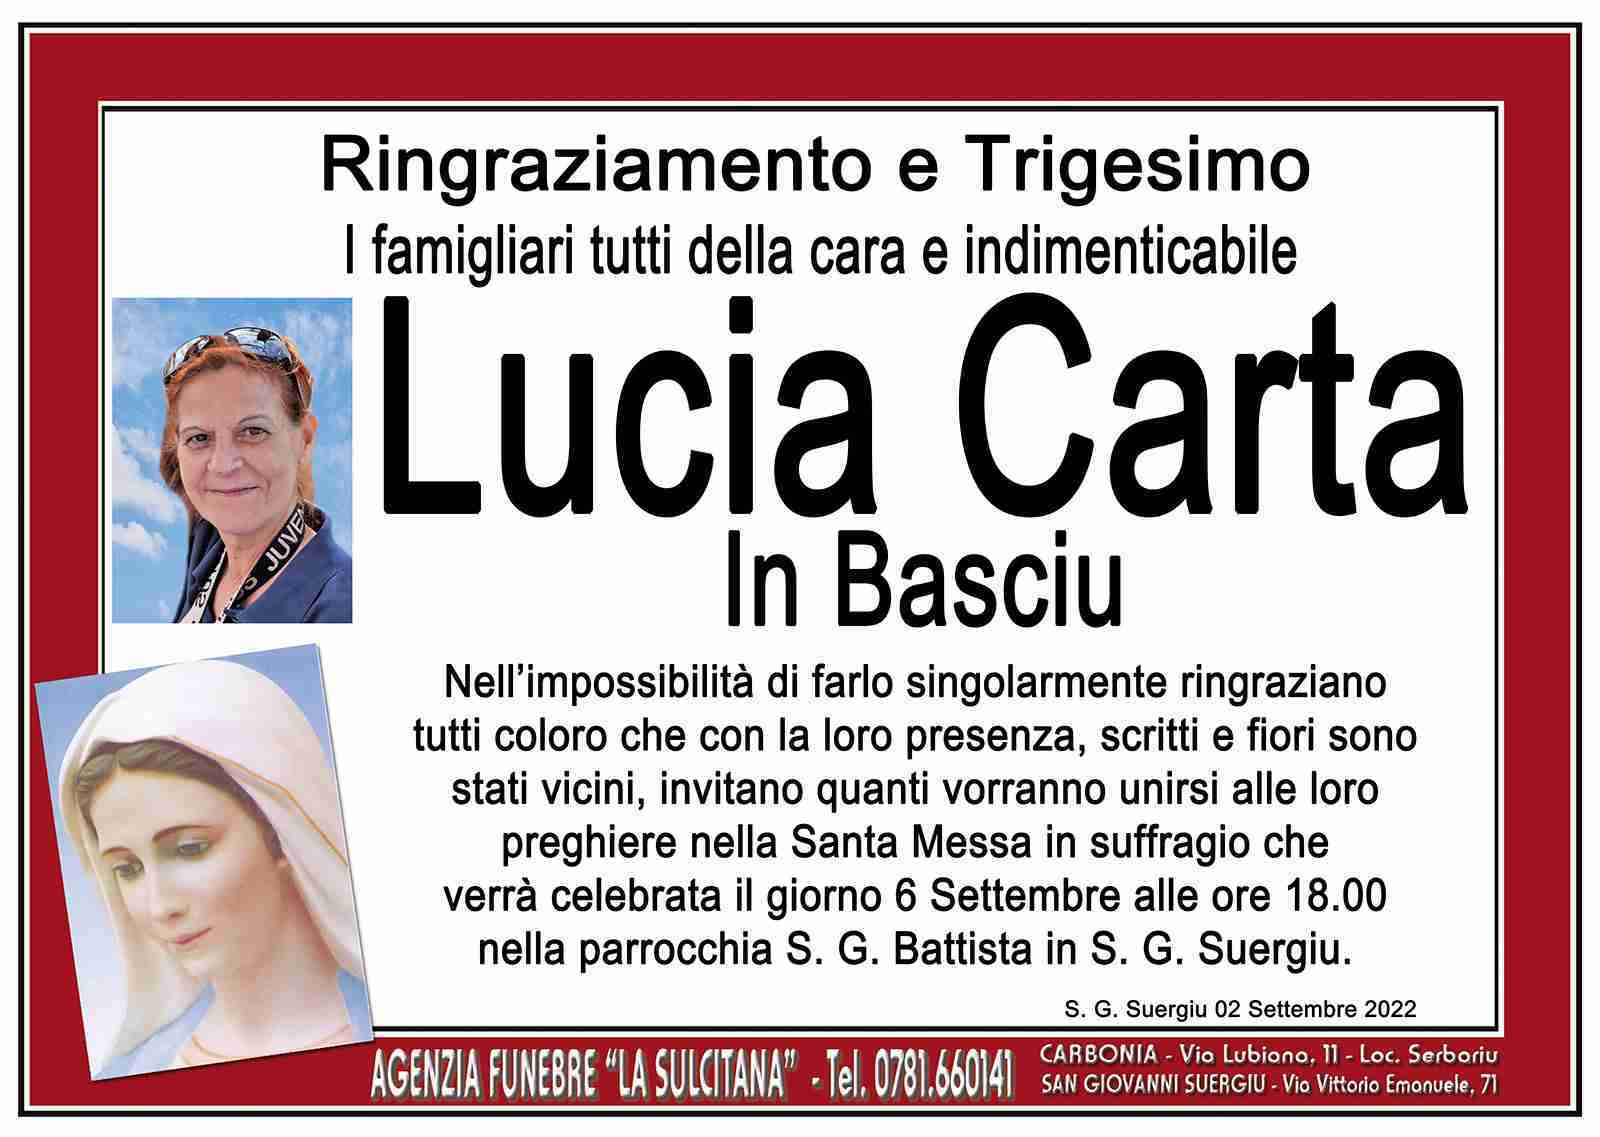 Lucia Carta